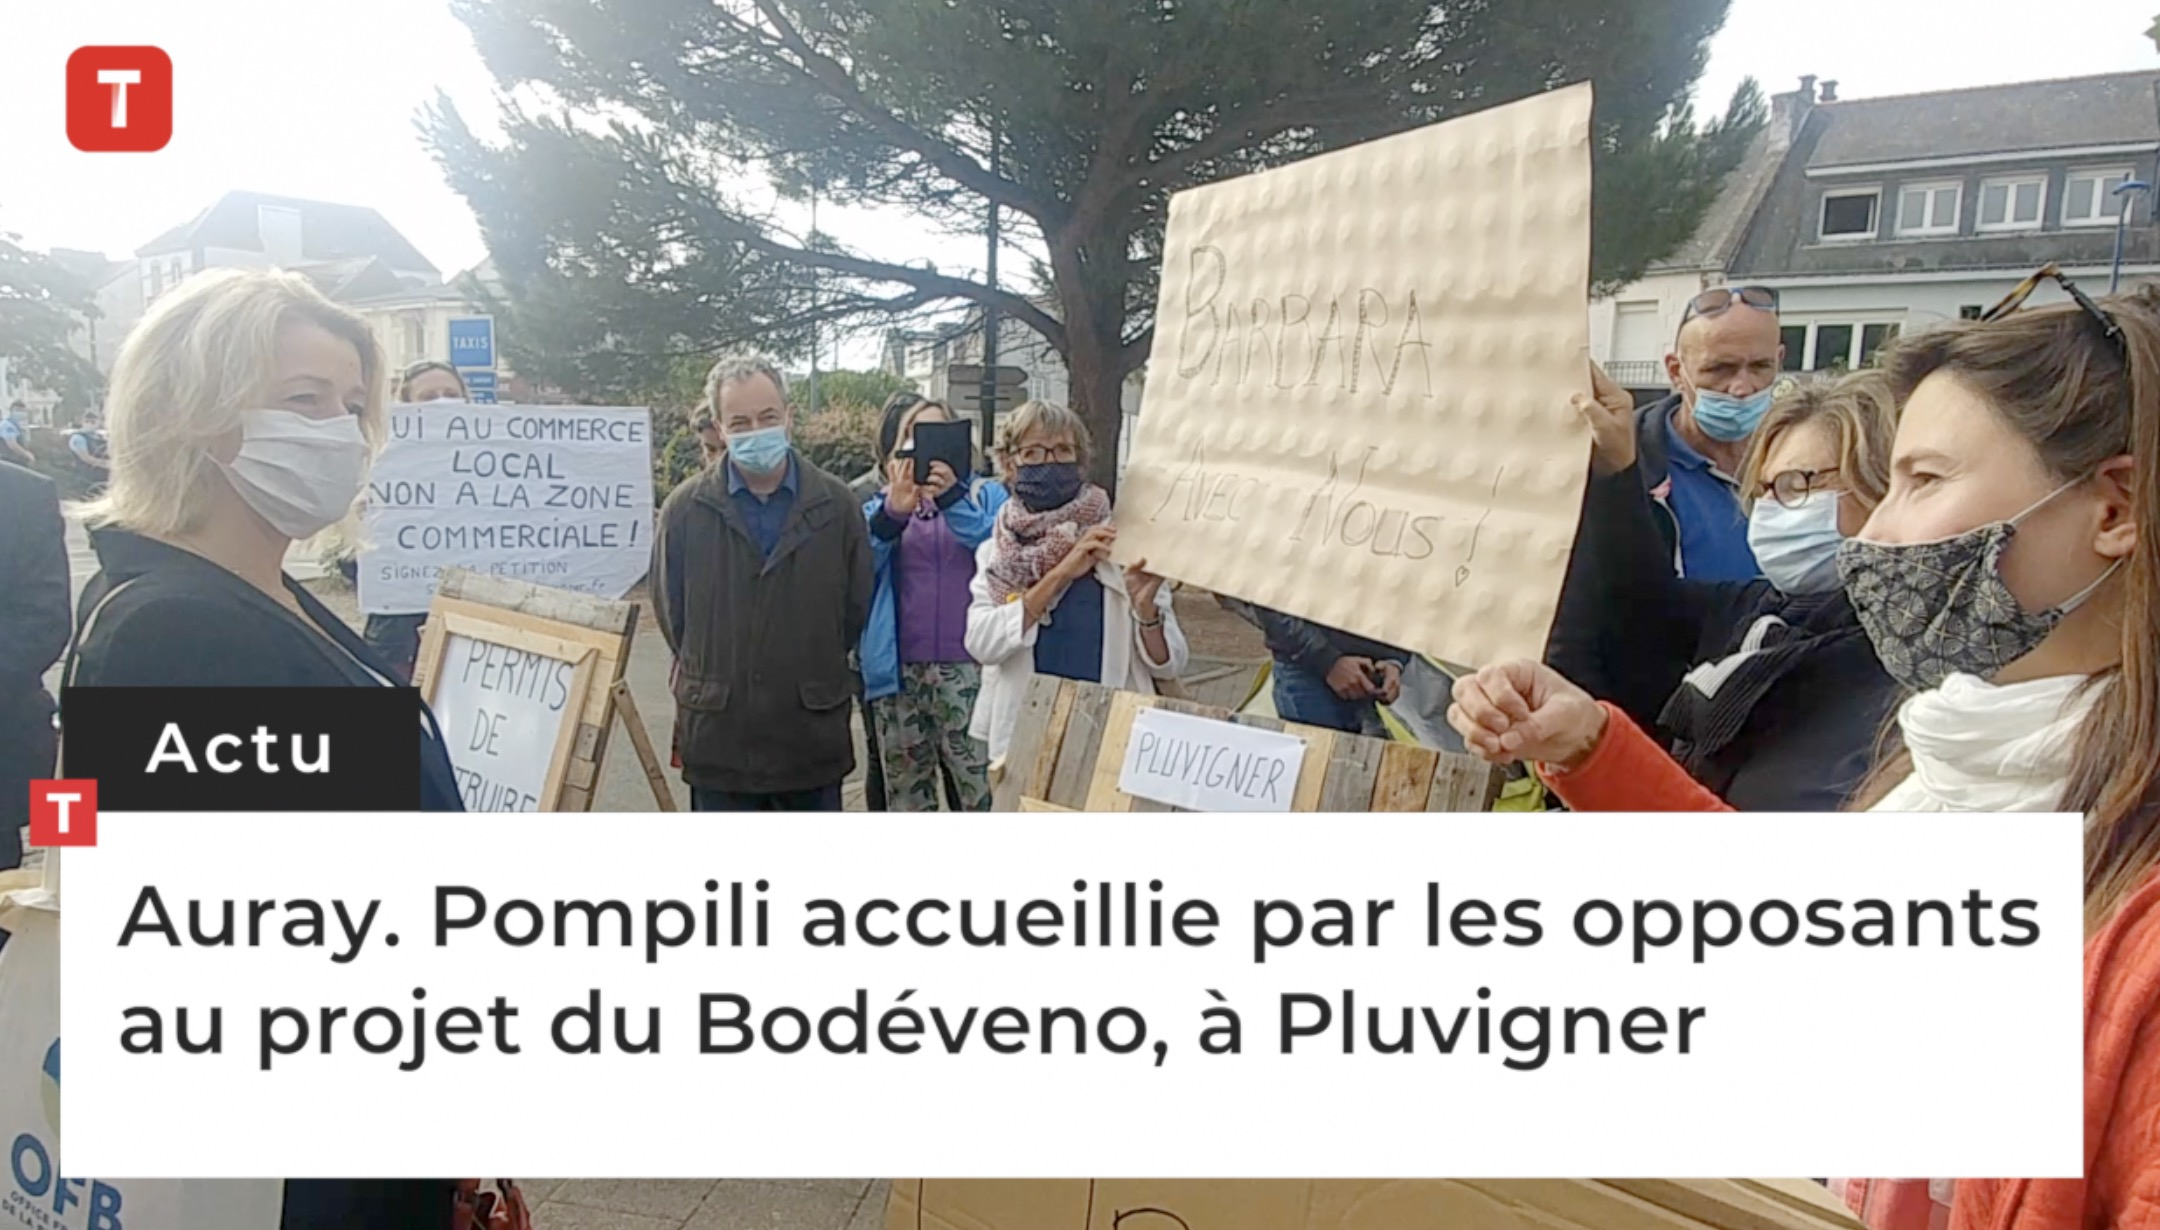 Auray. Pompili accueillie par les opposants au projet du Bodéveno, à Pluvigner (Le Télégramme)